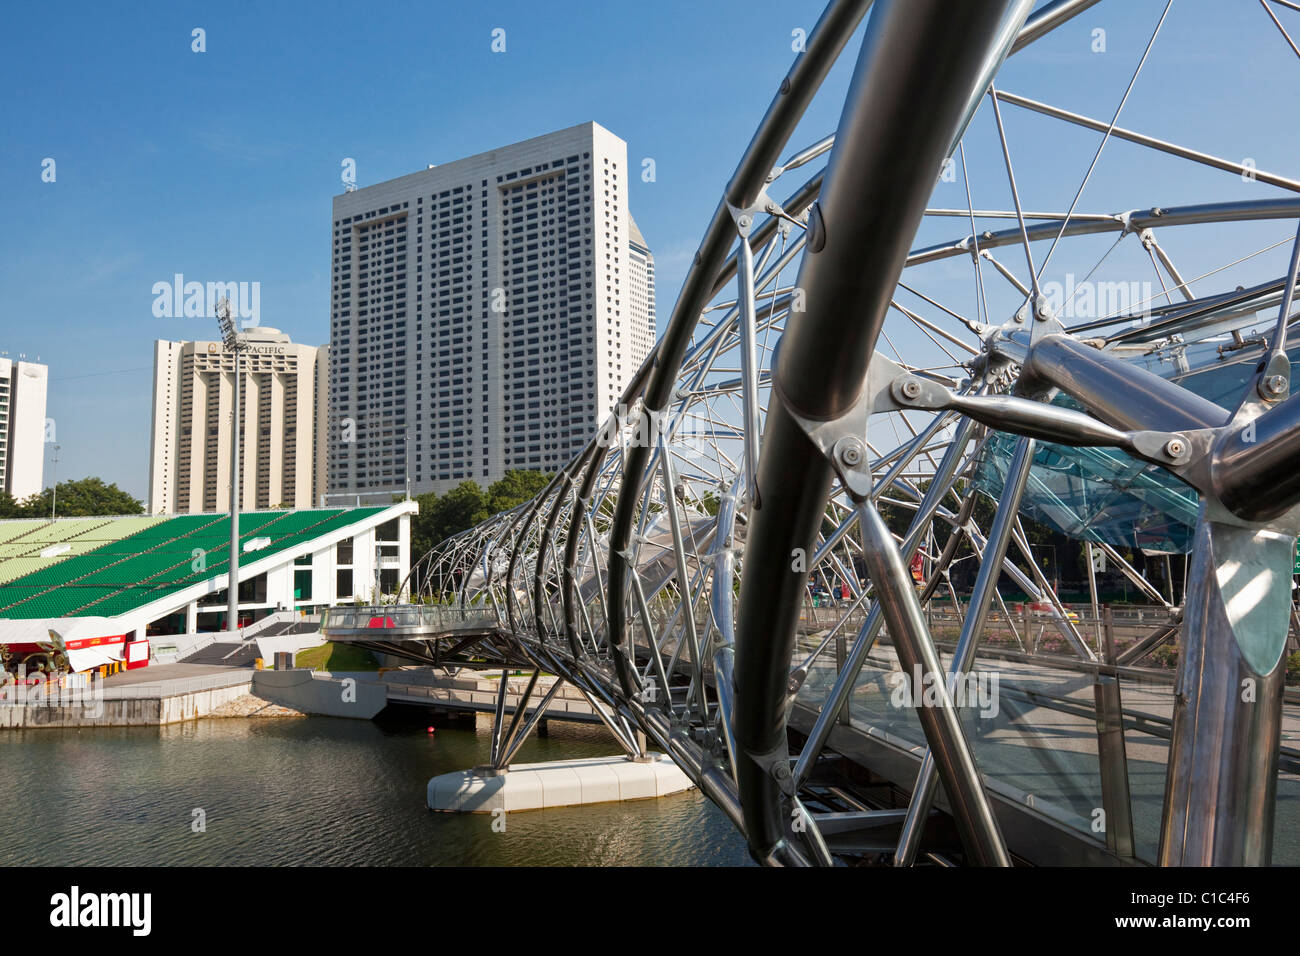 Vue sur le pont de l'hélice. Le pont relie le centre de plaisance de la Marina Bay Sands Hotel. Marina Bay, Singapour Banque D'Images